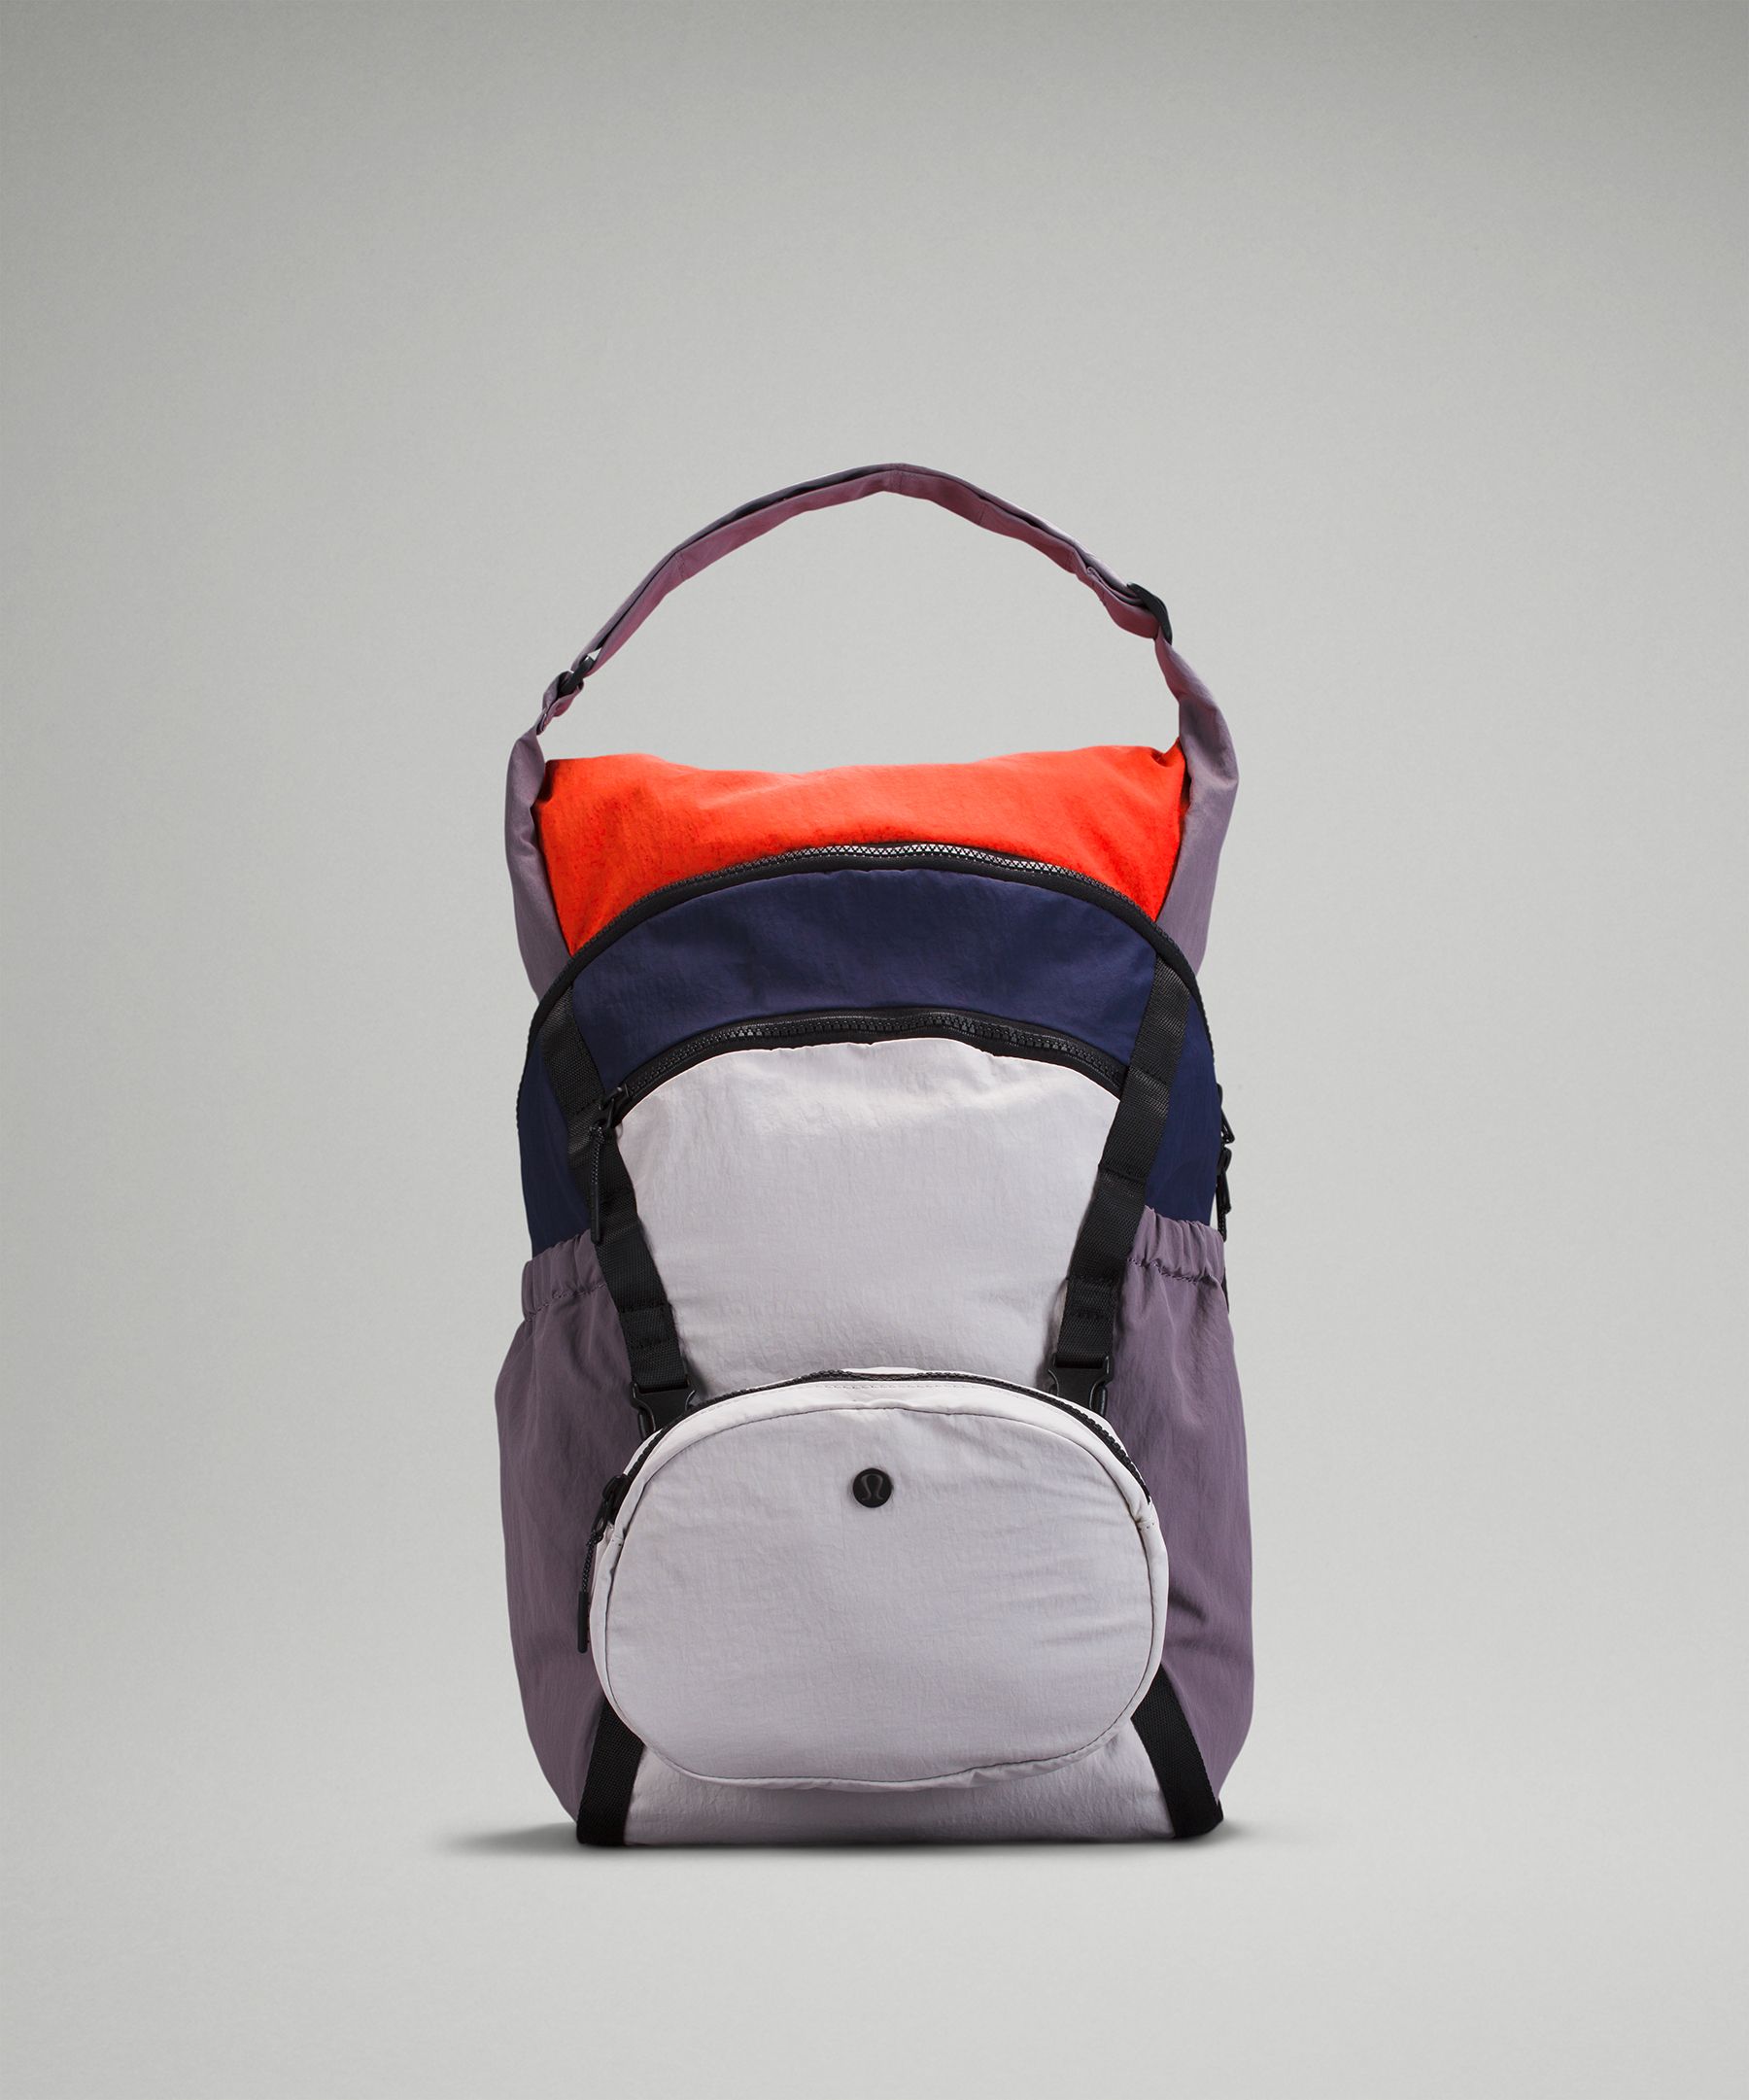 Lululemon Pack And Go Backpack 21l In Cadet Blue/chrome/dusky Lavender